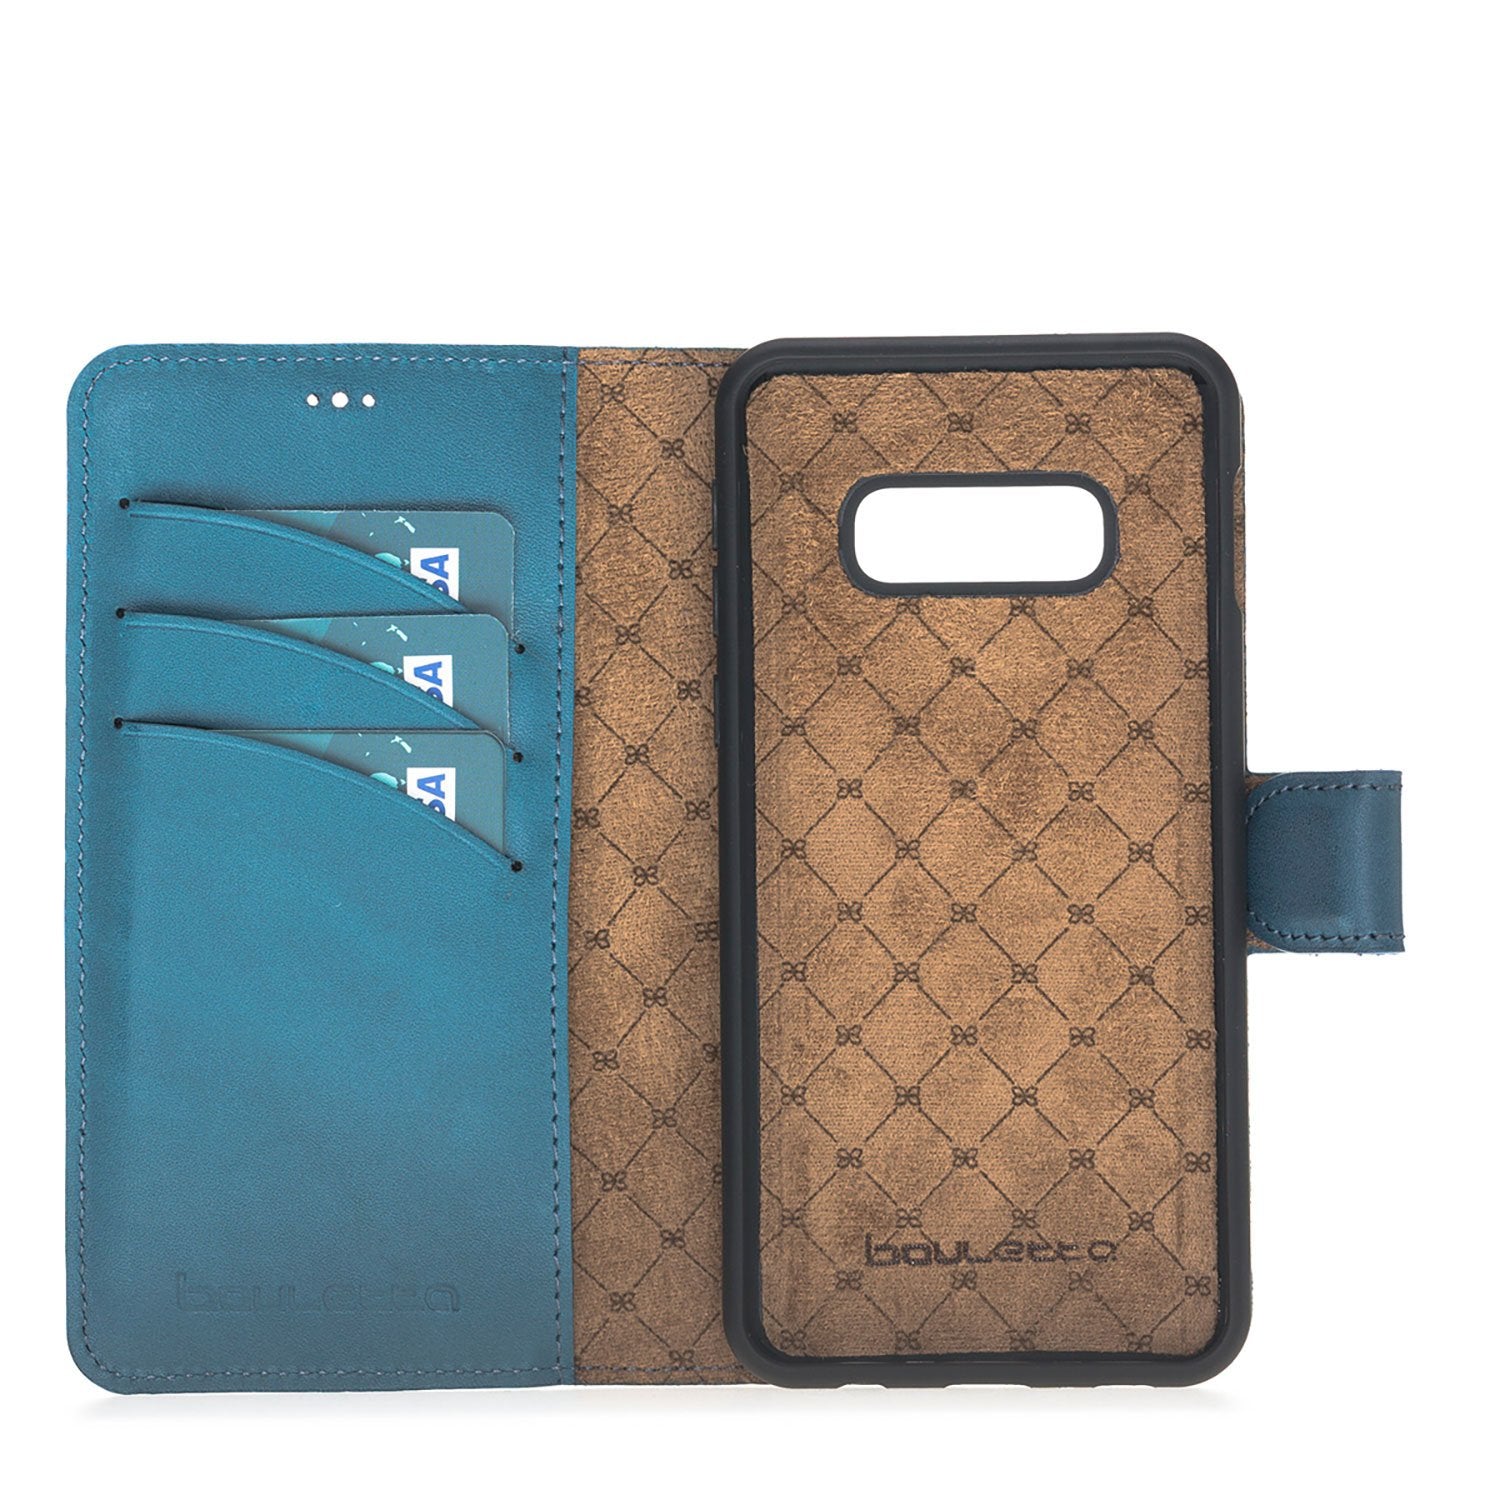 Magnetische abnehmbare Leder Geldbörse für Samsung Galaxy S10e Essential - Navy Blau